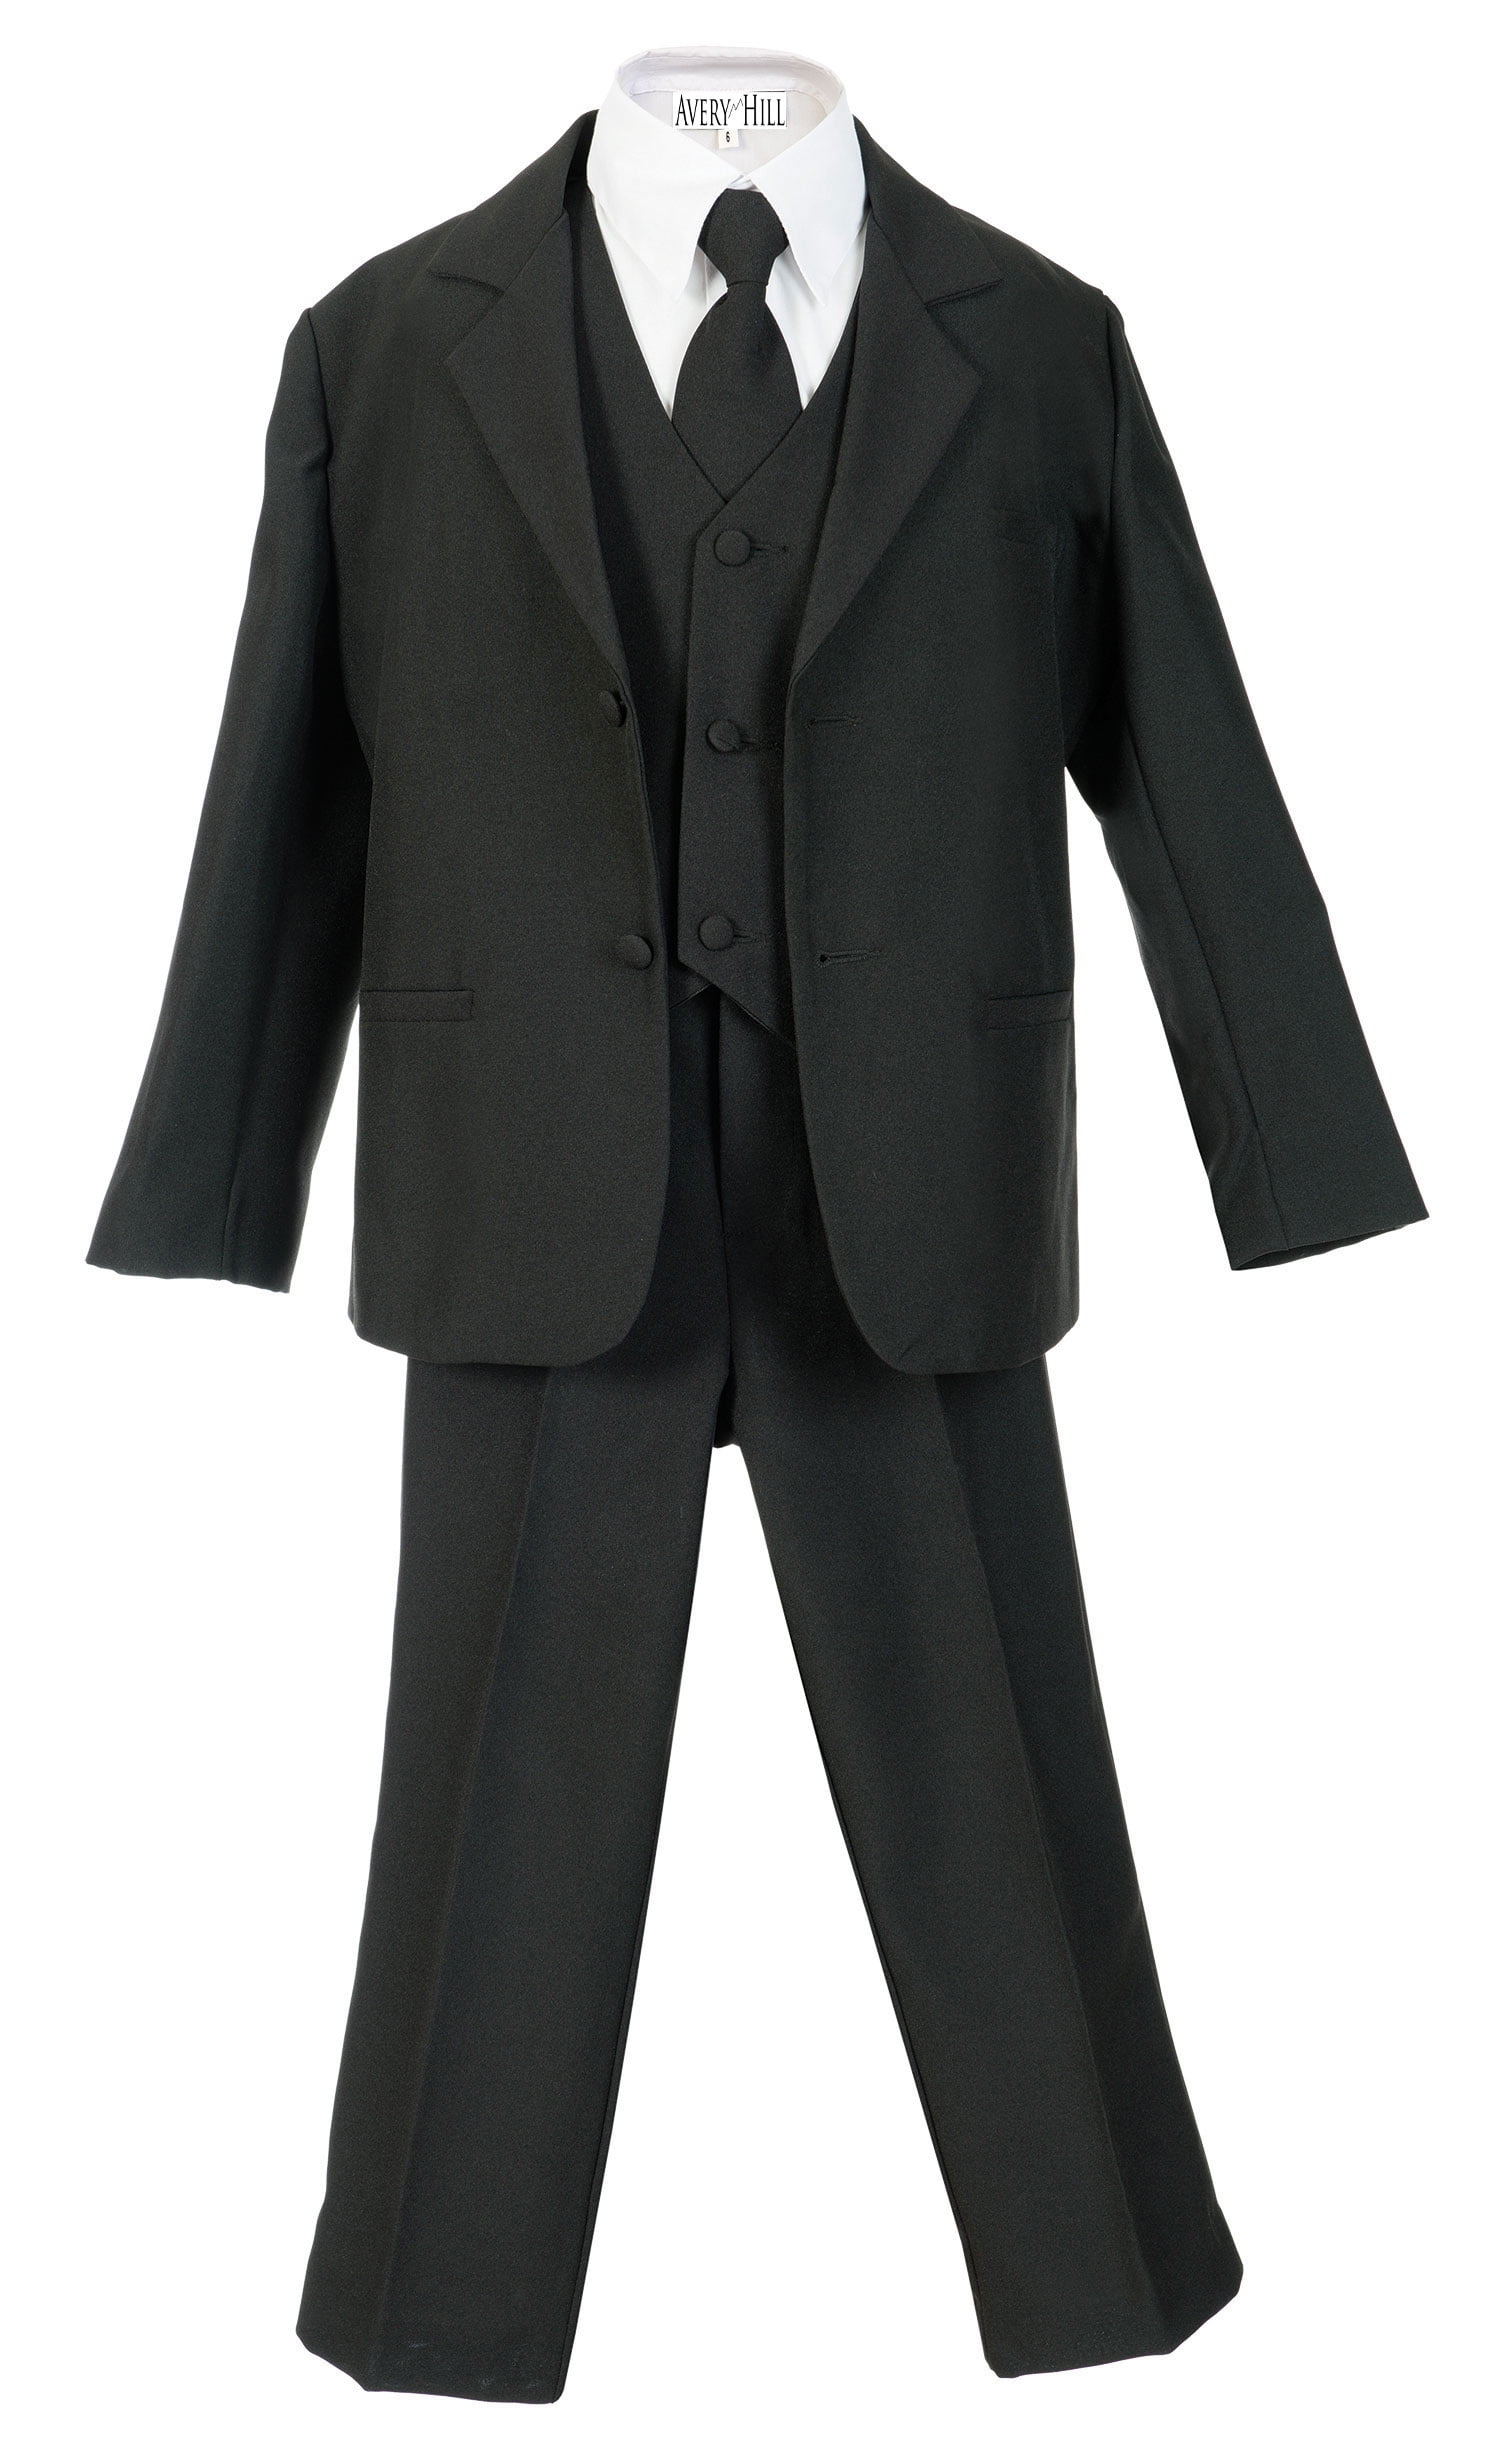 Boys Navy Blue 4 PC Vest Suit Set size S M L XL 2T 3T 4T 5 6 7 New Suit Tuxedo 